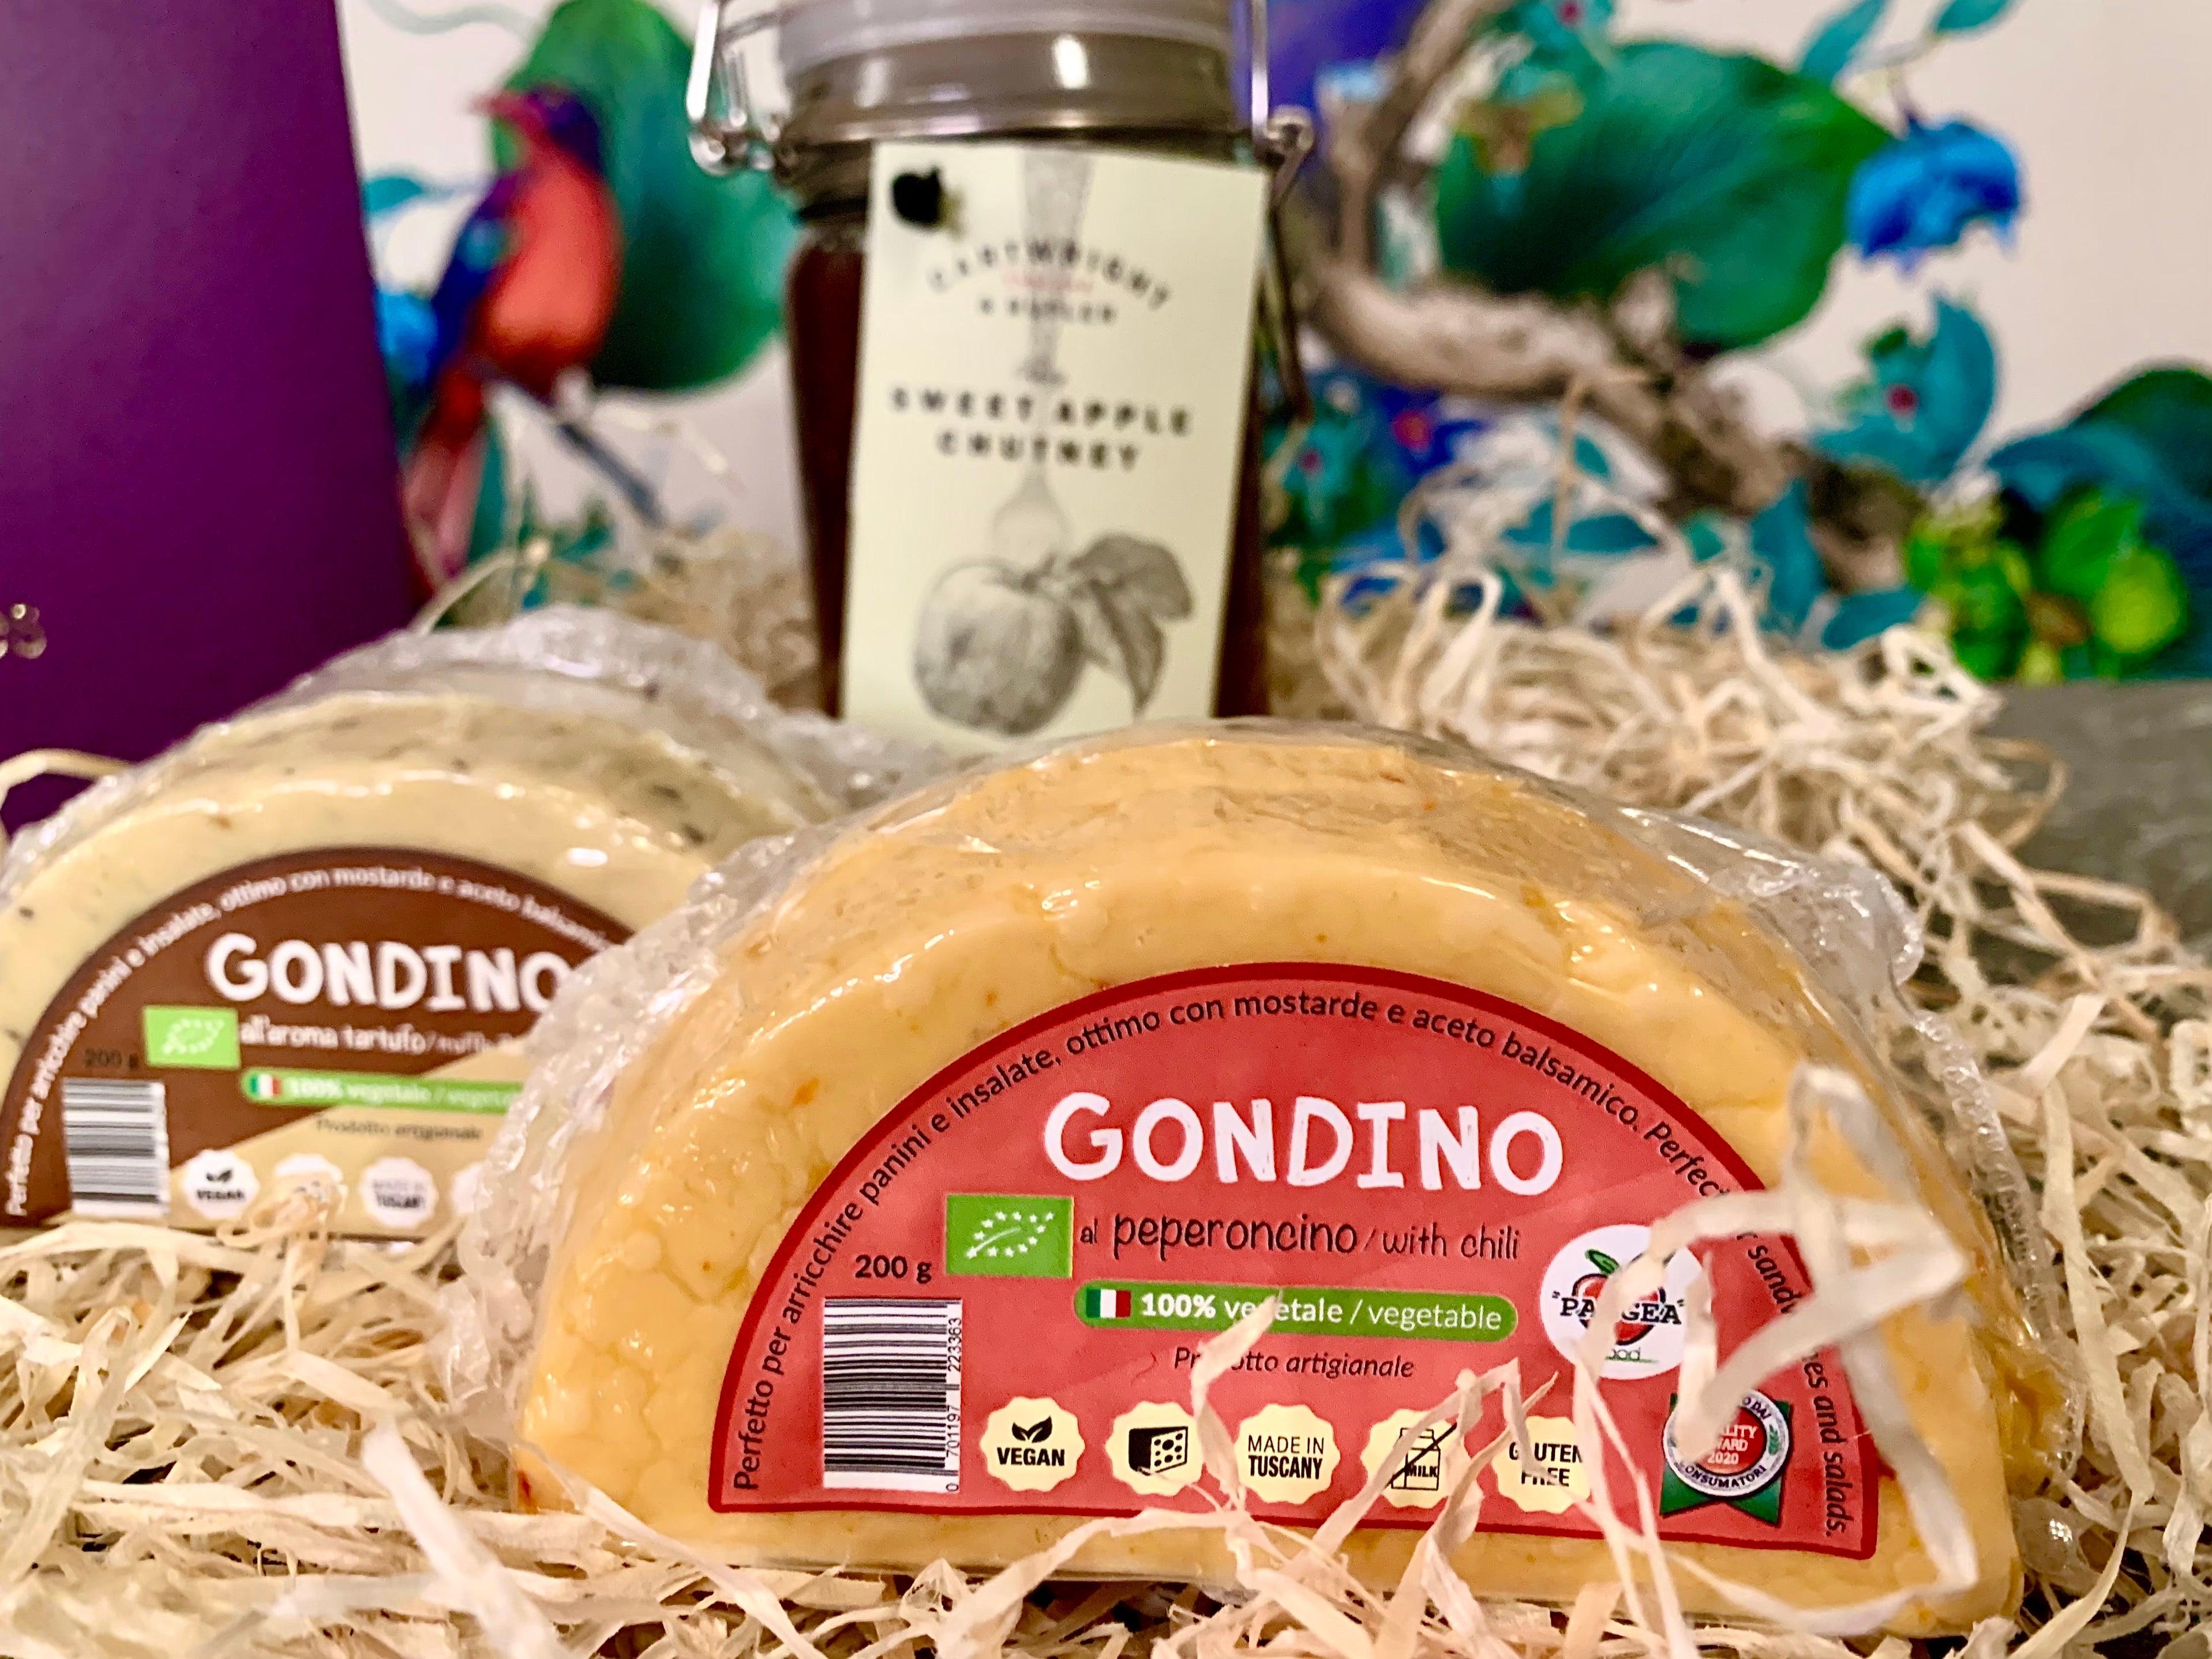 The Mini Gondino Vegan Cheese Gift Box 400g (cheese weight) - Celebration Cheeses